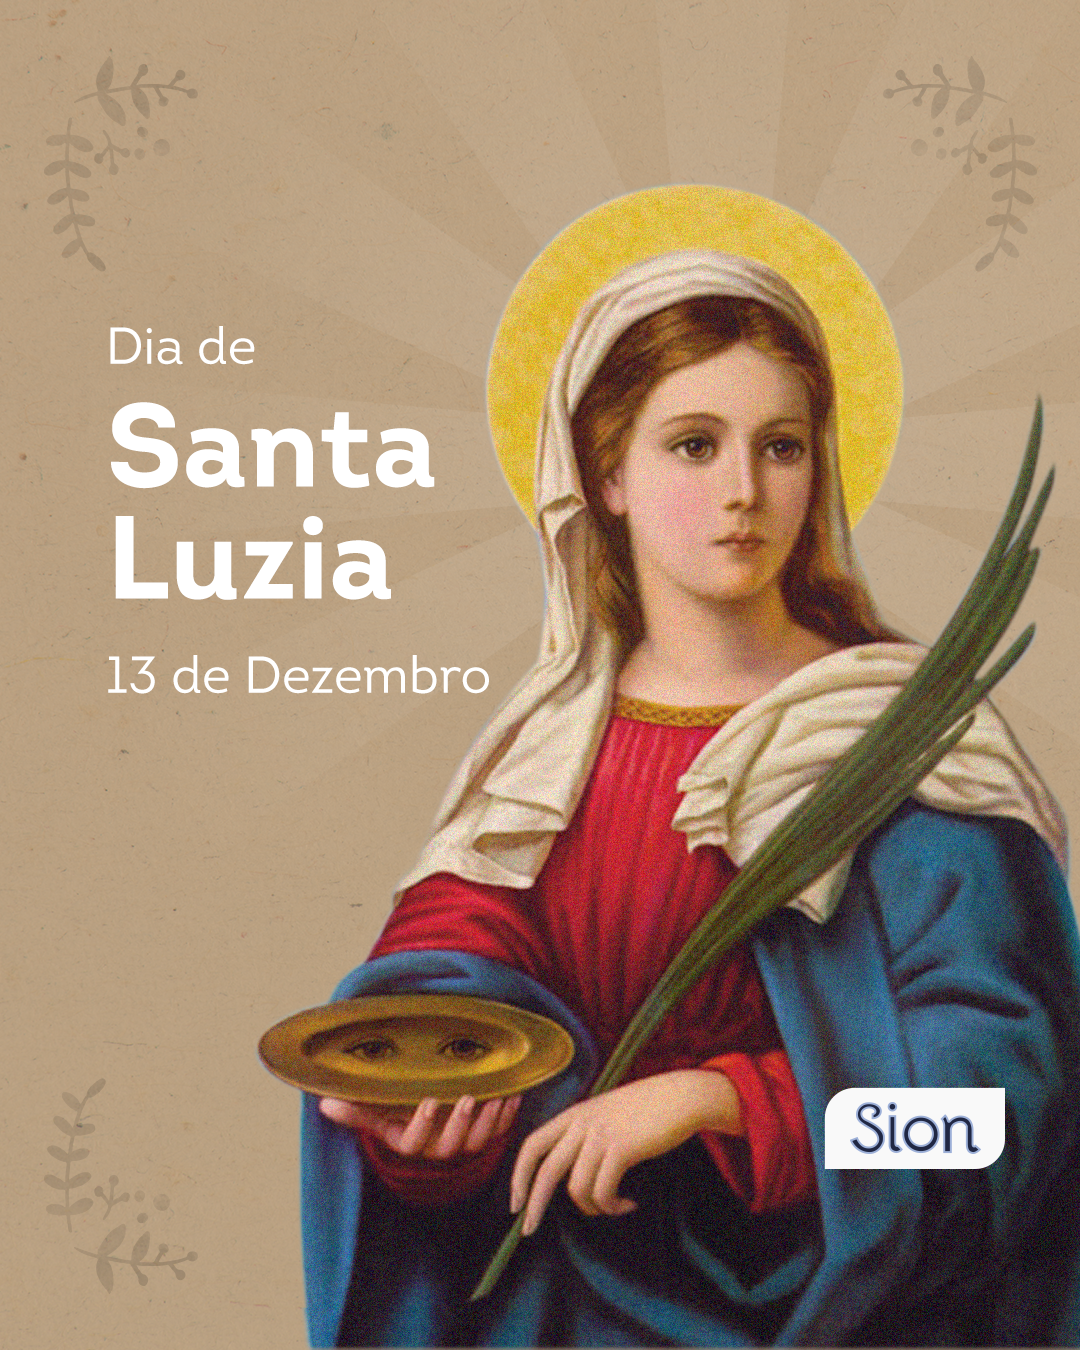 Conheça a história de Santa Luzia - Sion Solitude